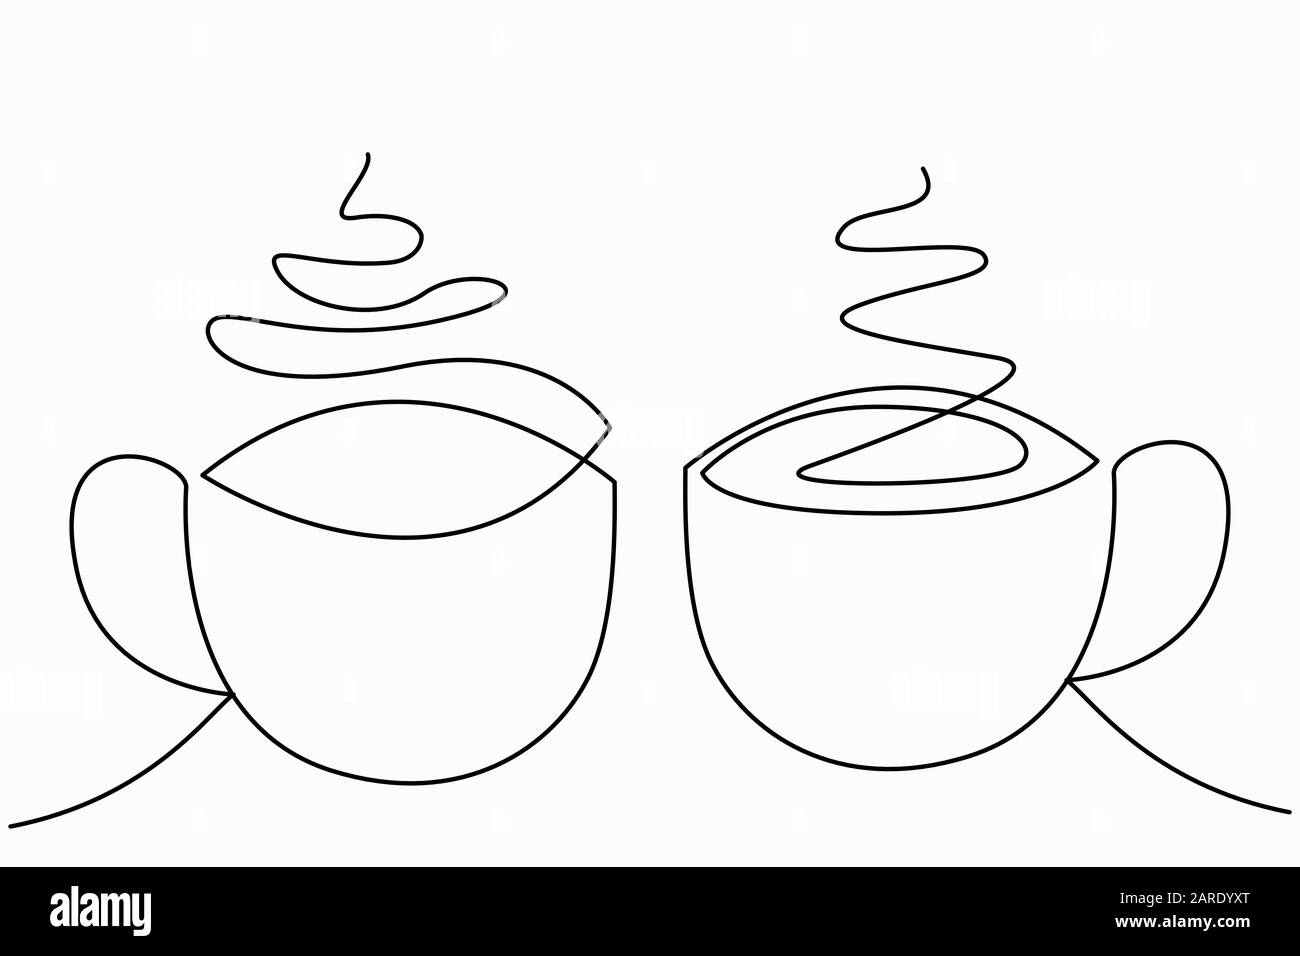 Dessin de lignes continues ou dessin D'Une ligne de café chaud et de fumée, une tasse de dessin de café concept. Illustration vectorielle. Illustration de Vecteur